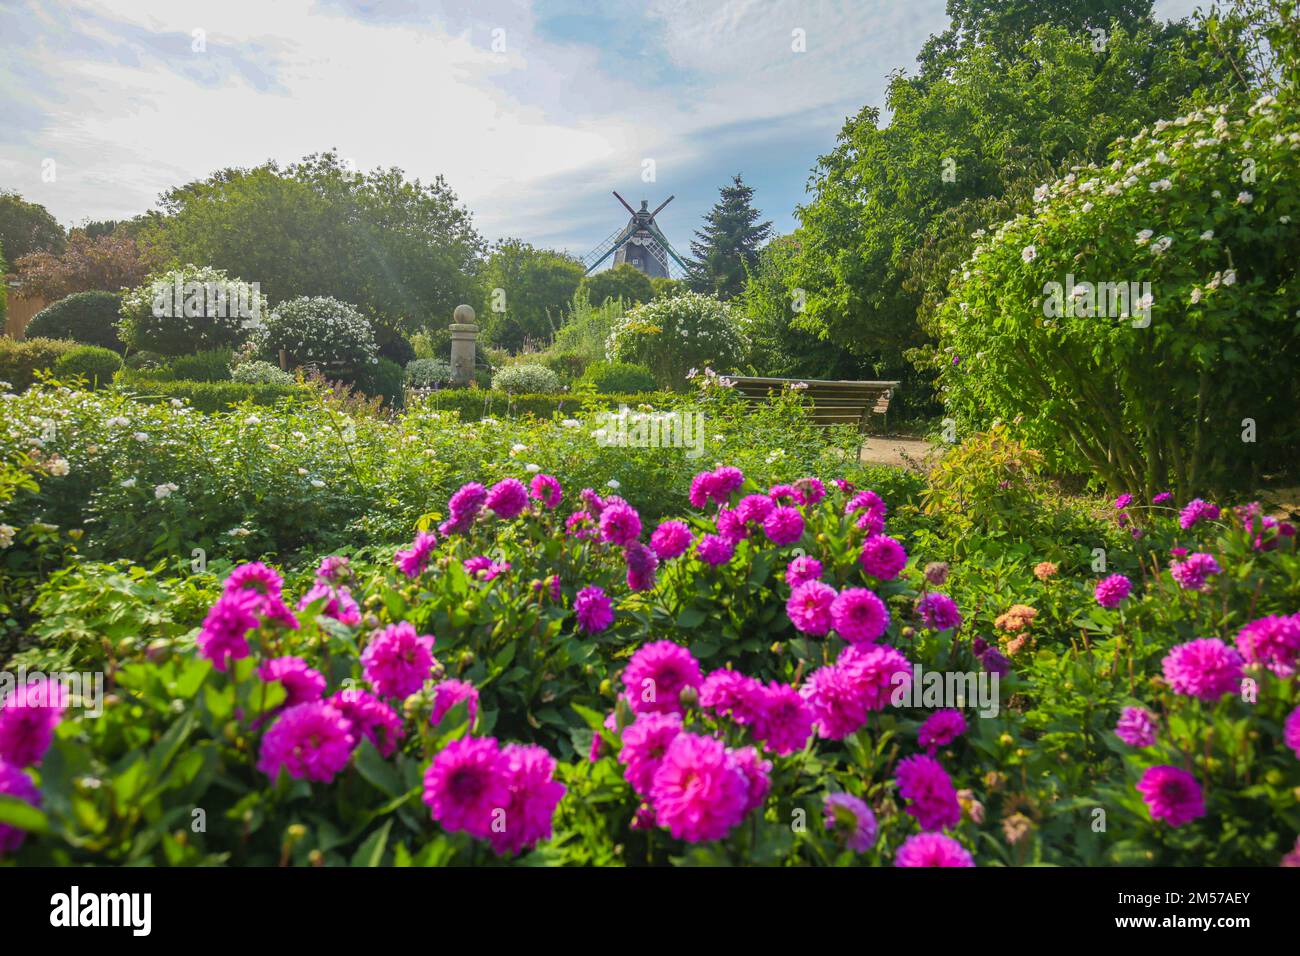 Violette Dahlienblumen in einem Park. Blumenpark und Windmühle. Öffentlicher Park mit einer wunderschönen Aussicht. Dahlia-Blumen in einem sonnigen Park Stockfoto